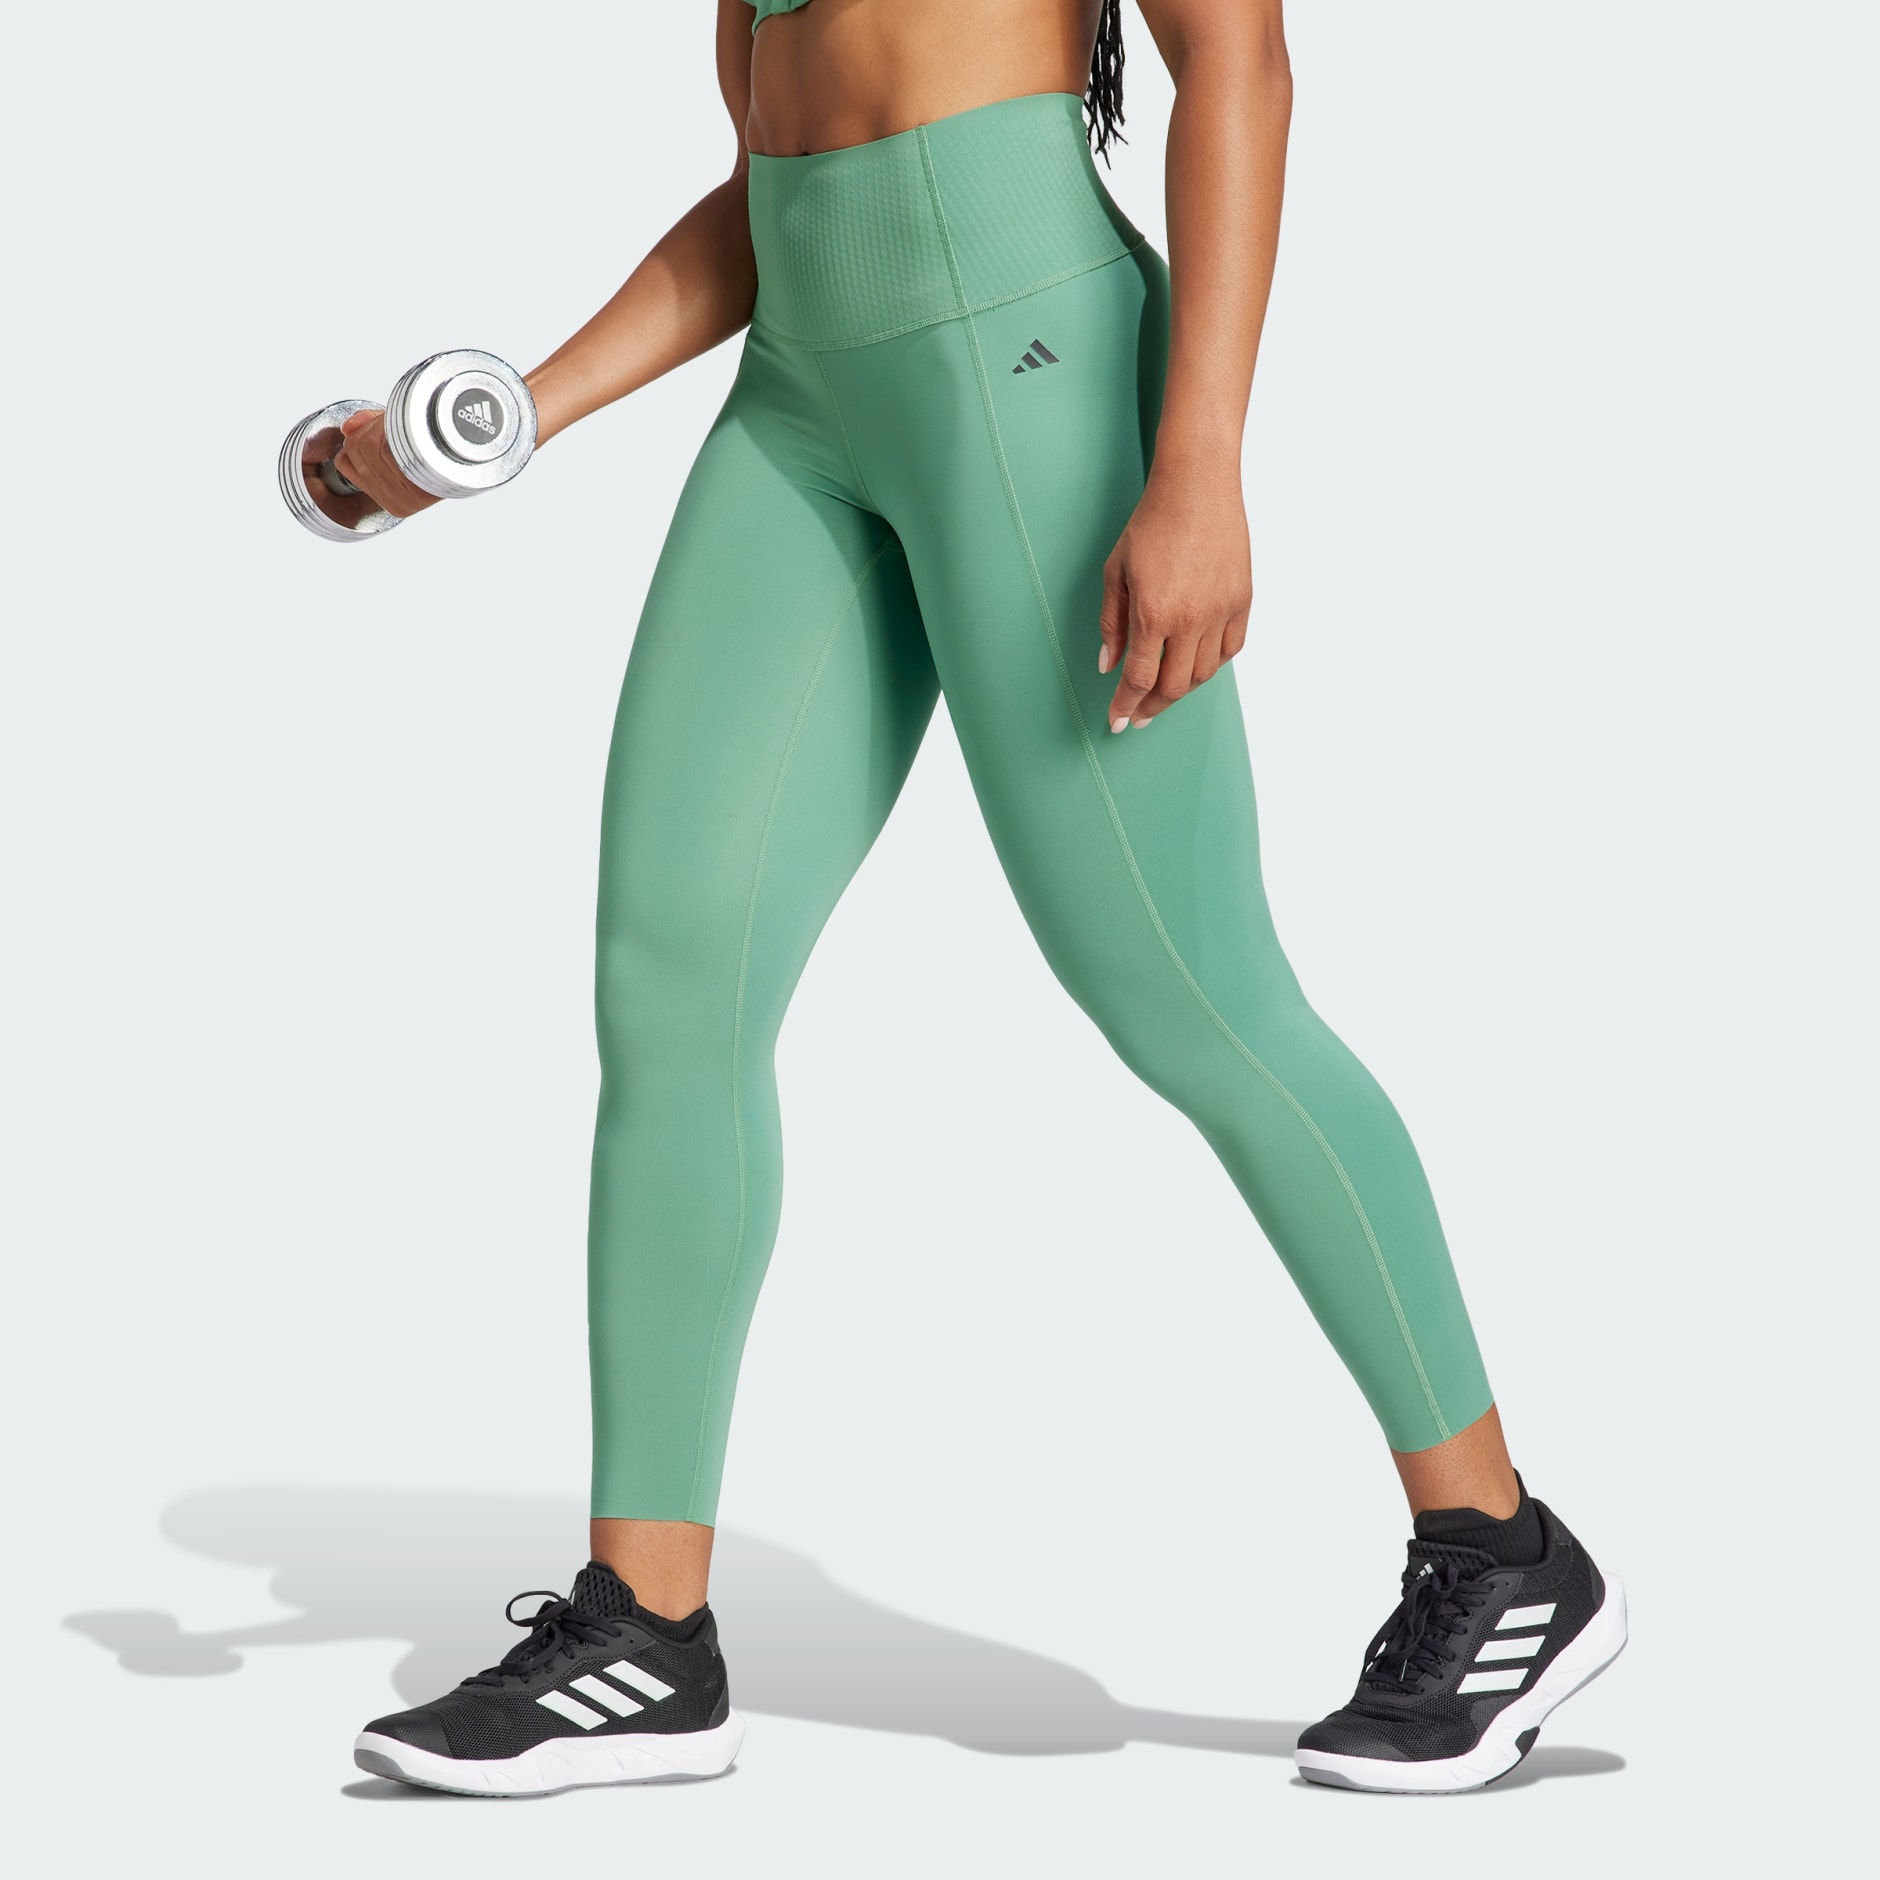 Women's Clothing - Optime Power 7/8 Leggings - Green